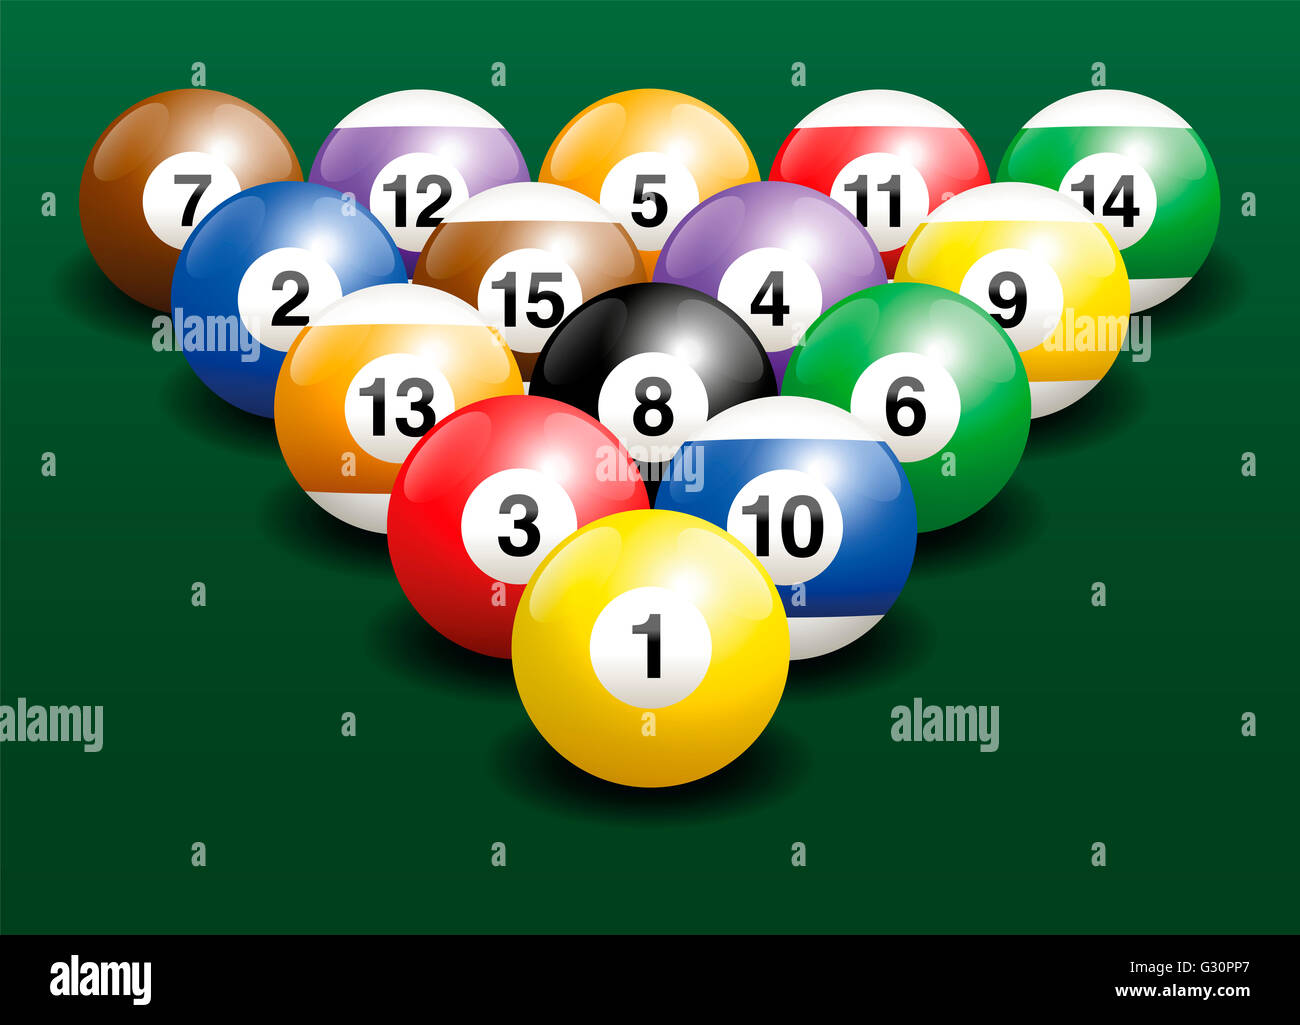 Billardkugeln Startposition. Dreidimensionale Darstellung auf grünem Farbverlauf Hintergrund. Stockfoto